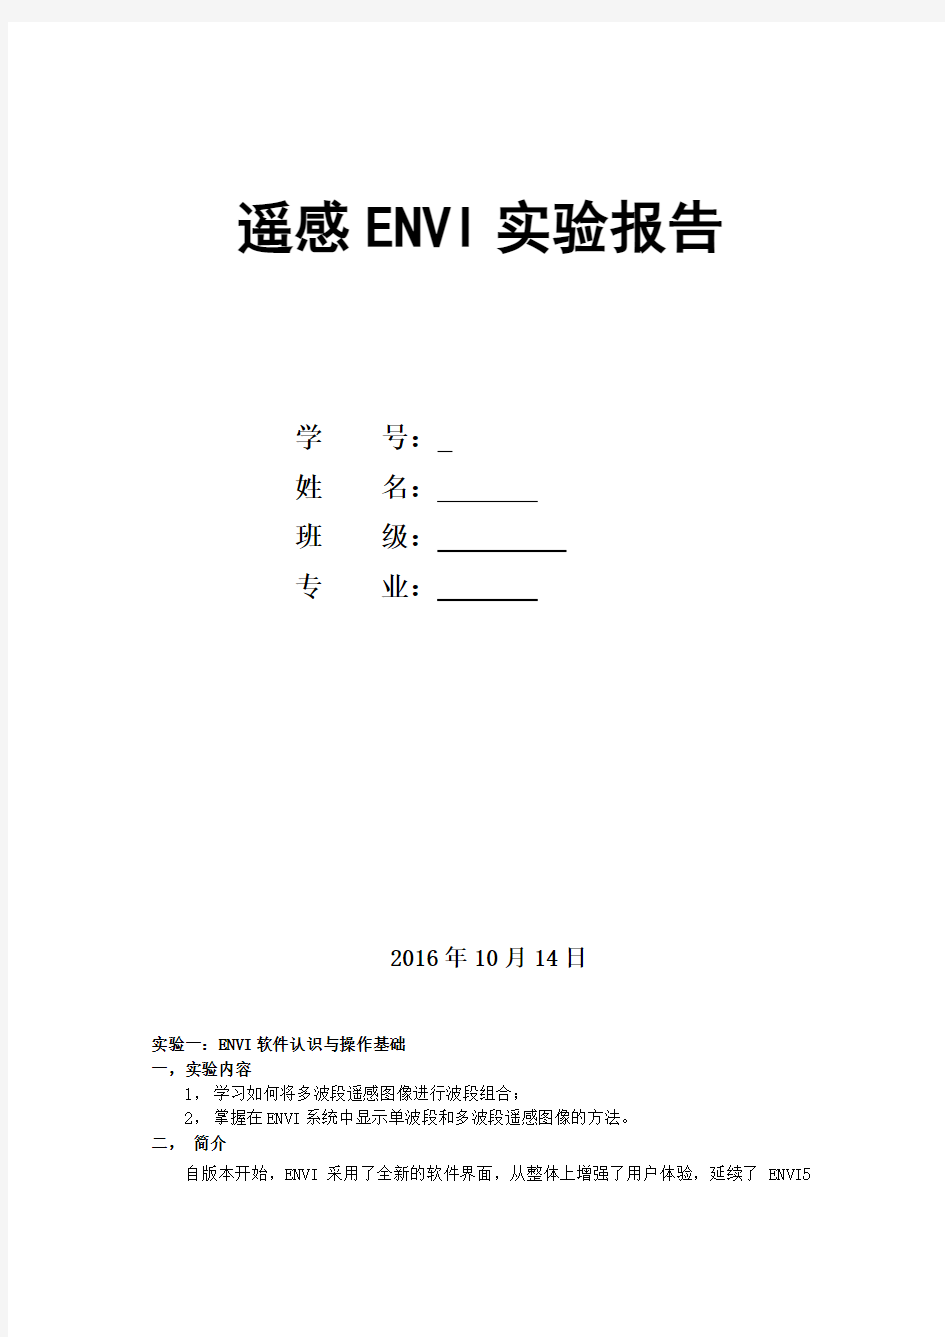 遥感ENVI实验报告